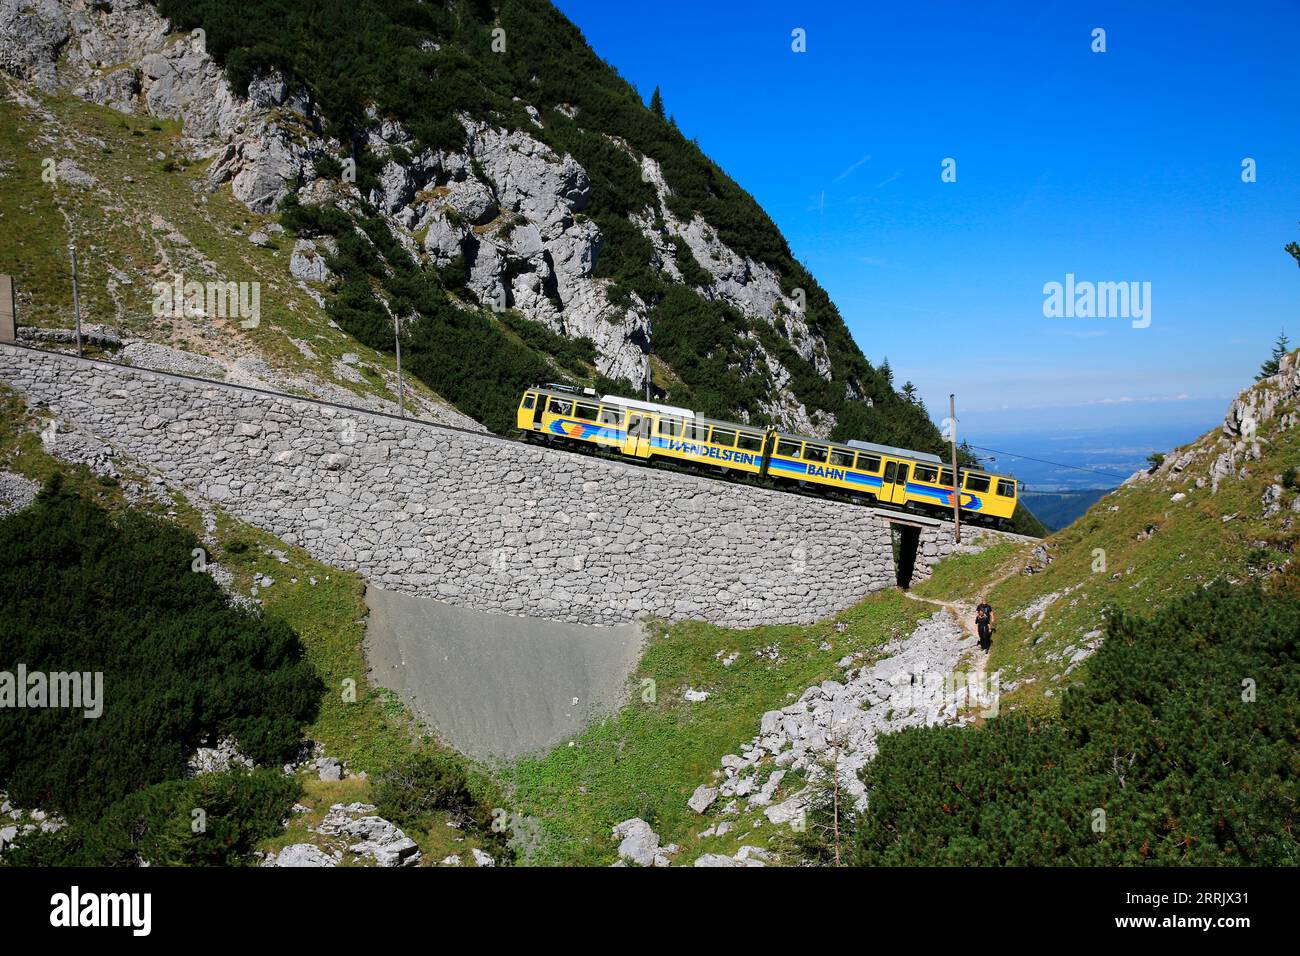 Wendelsteinbahn, già dal 1912 la più antica ferrovia a cremagliera di alta montagna della Germania, porta comodamente gli amanti della montagna e i turisti in una delle montagne panoramiche più belle della Baviera. Wendelstein, Baviera, Germania Foto Stock